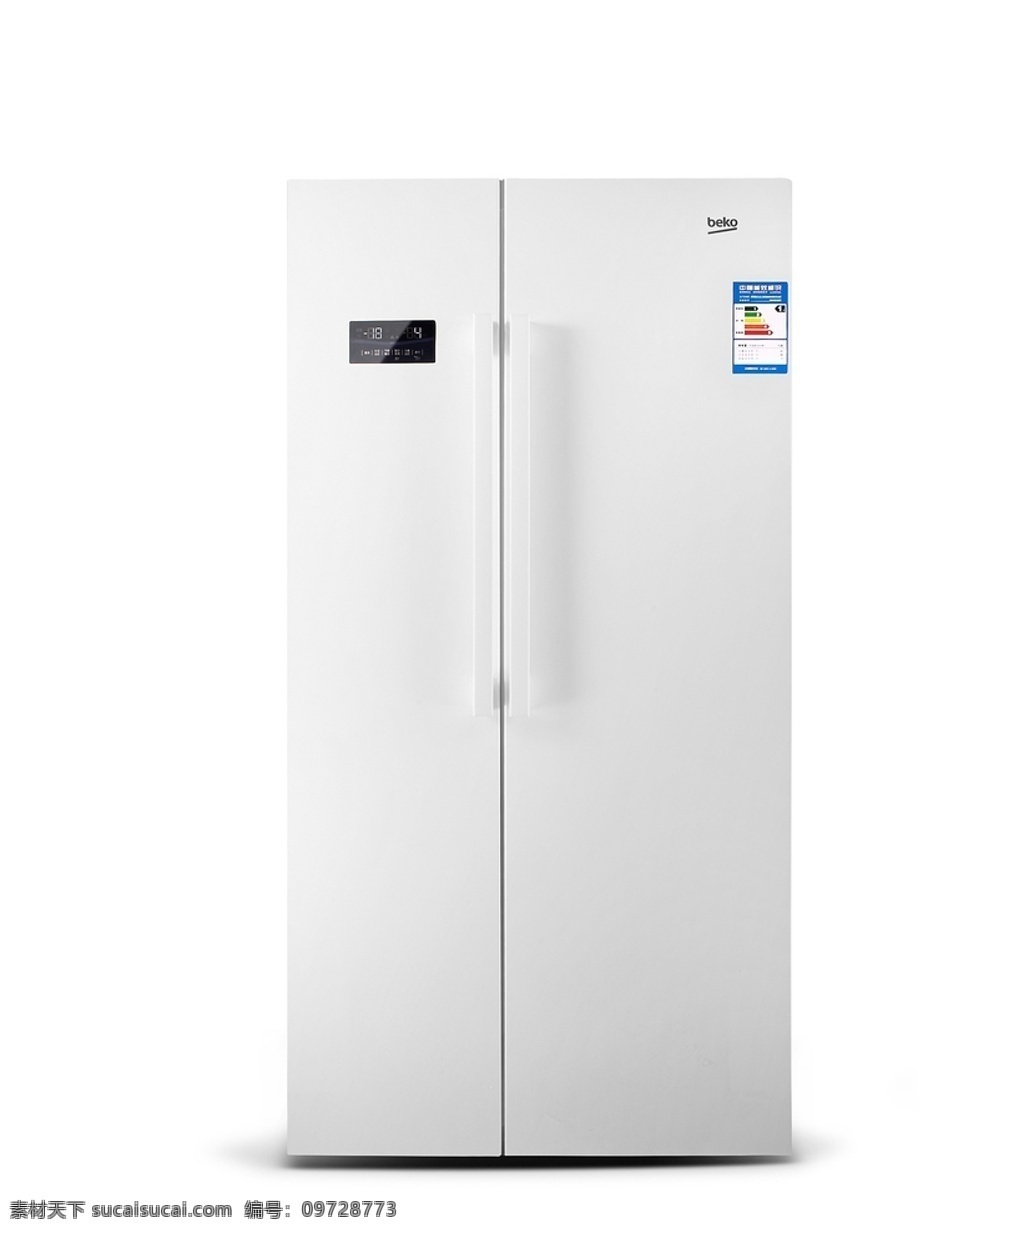 冰箱图片 冰箱家电 智能冰箱 多门冰箱 大型冰箱 冰箱 生活百科 数码家电